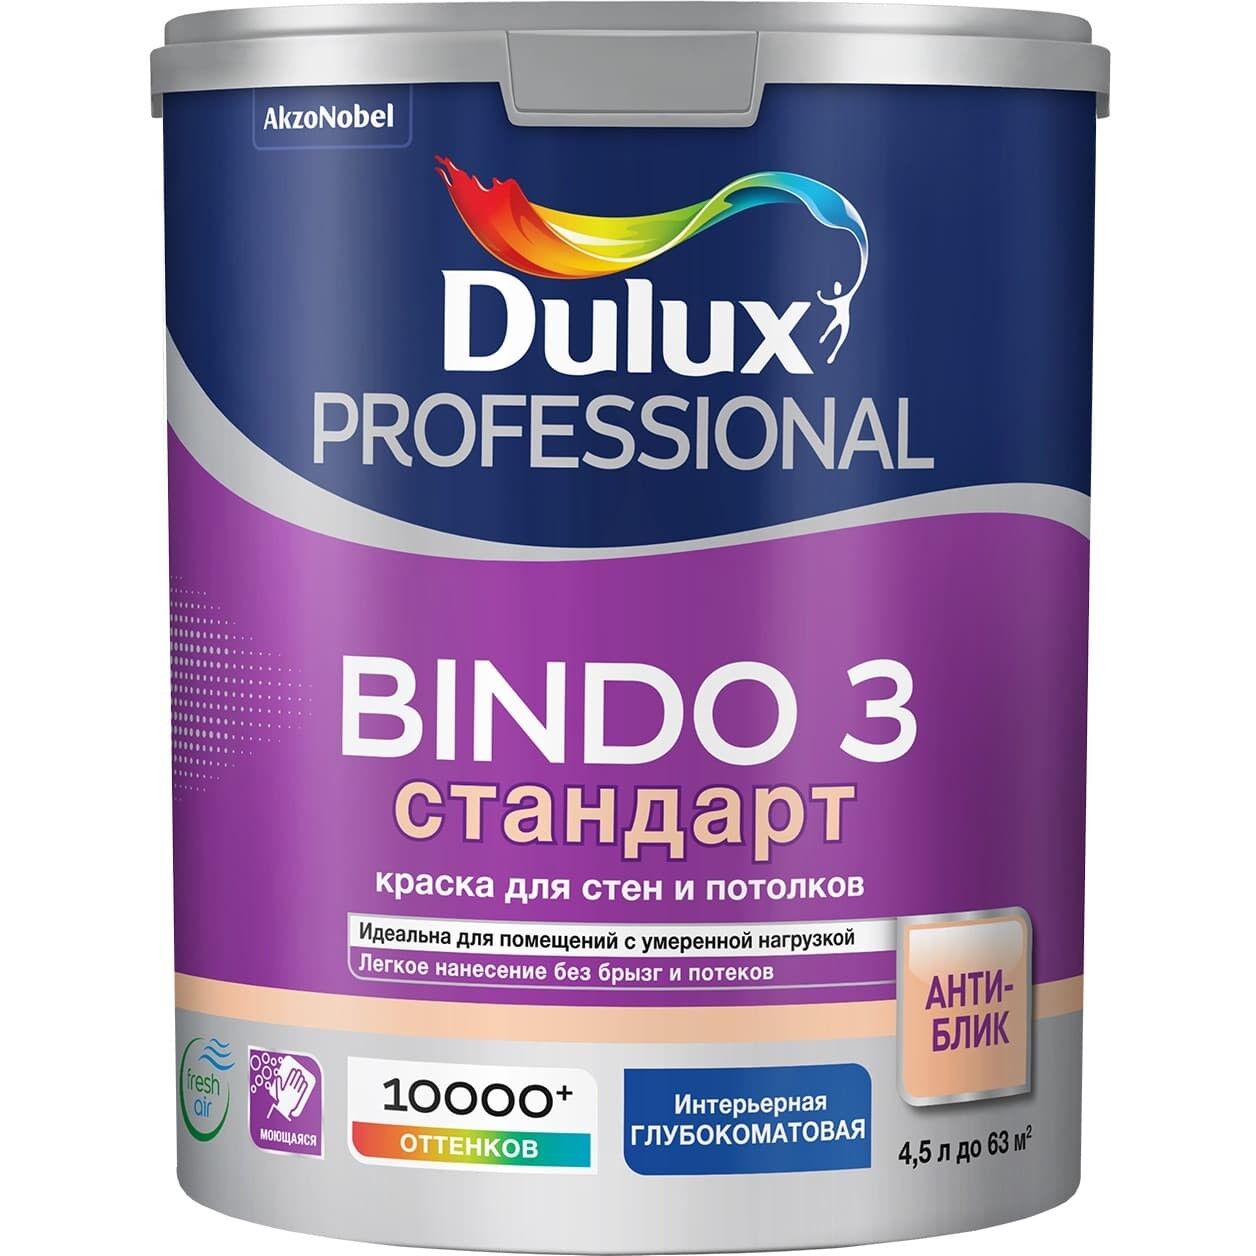 Краска Bindo3 стандарт для стен и потолков, для помещений с умеренной нагрузкой